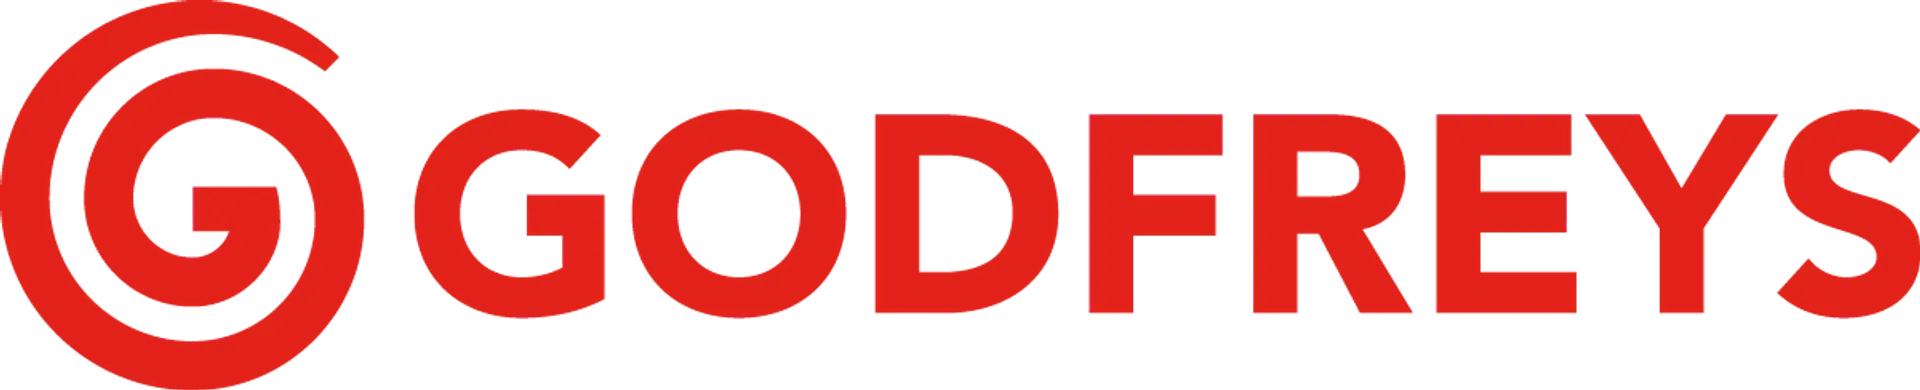 GODFREYS logo